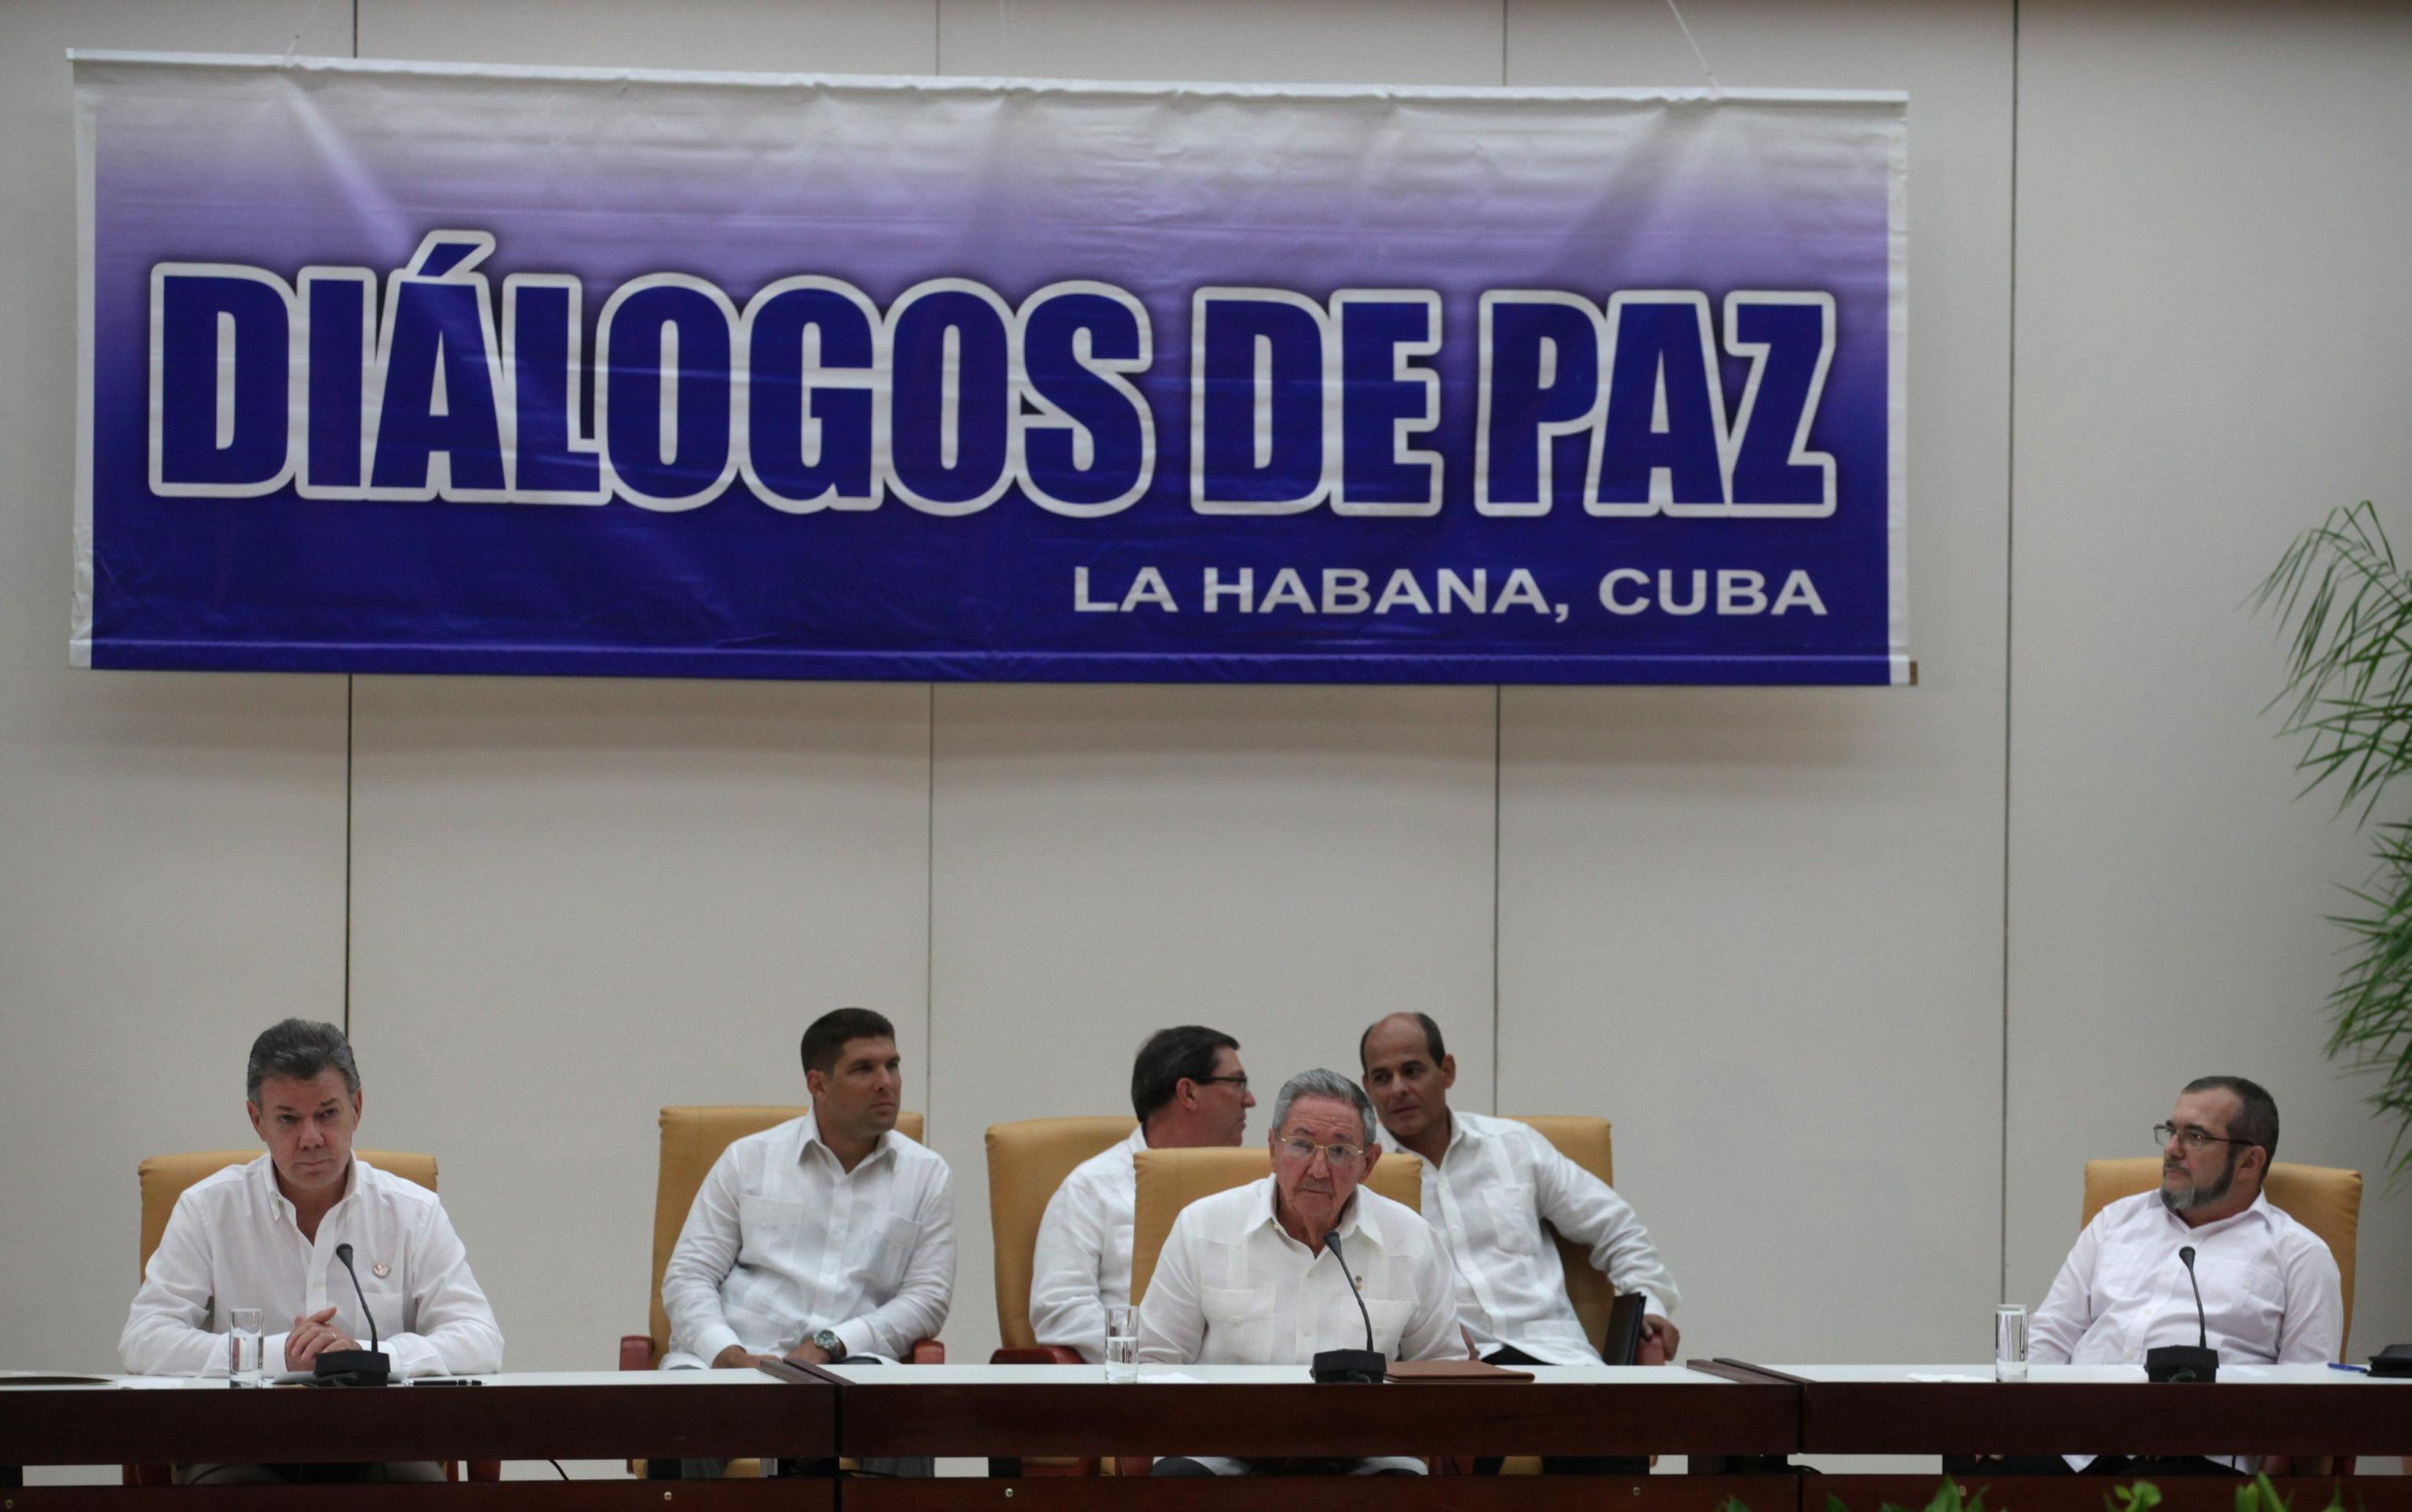 Dialogs of peace at Cuba